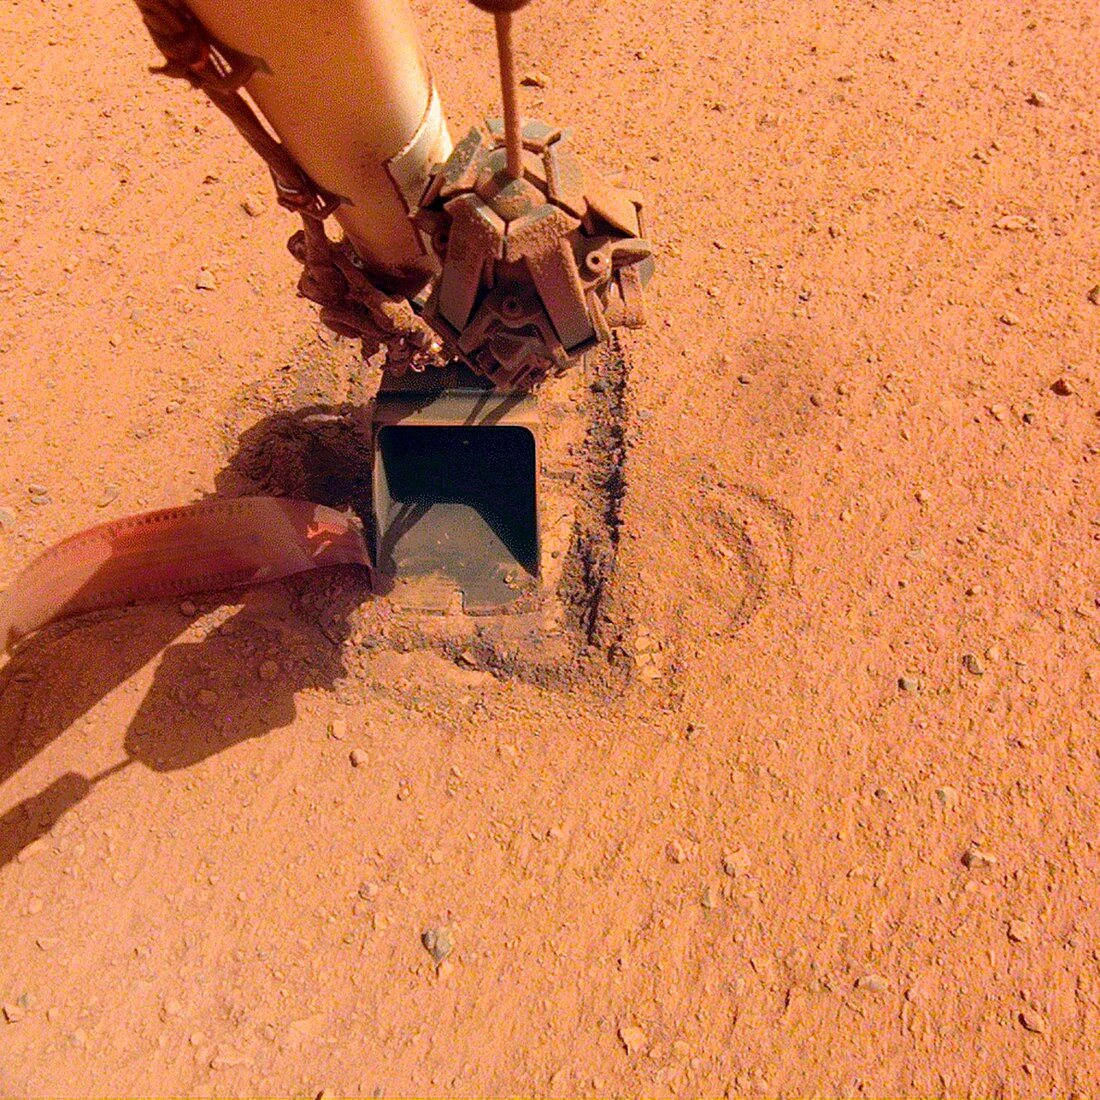 InSight lander mole